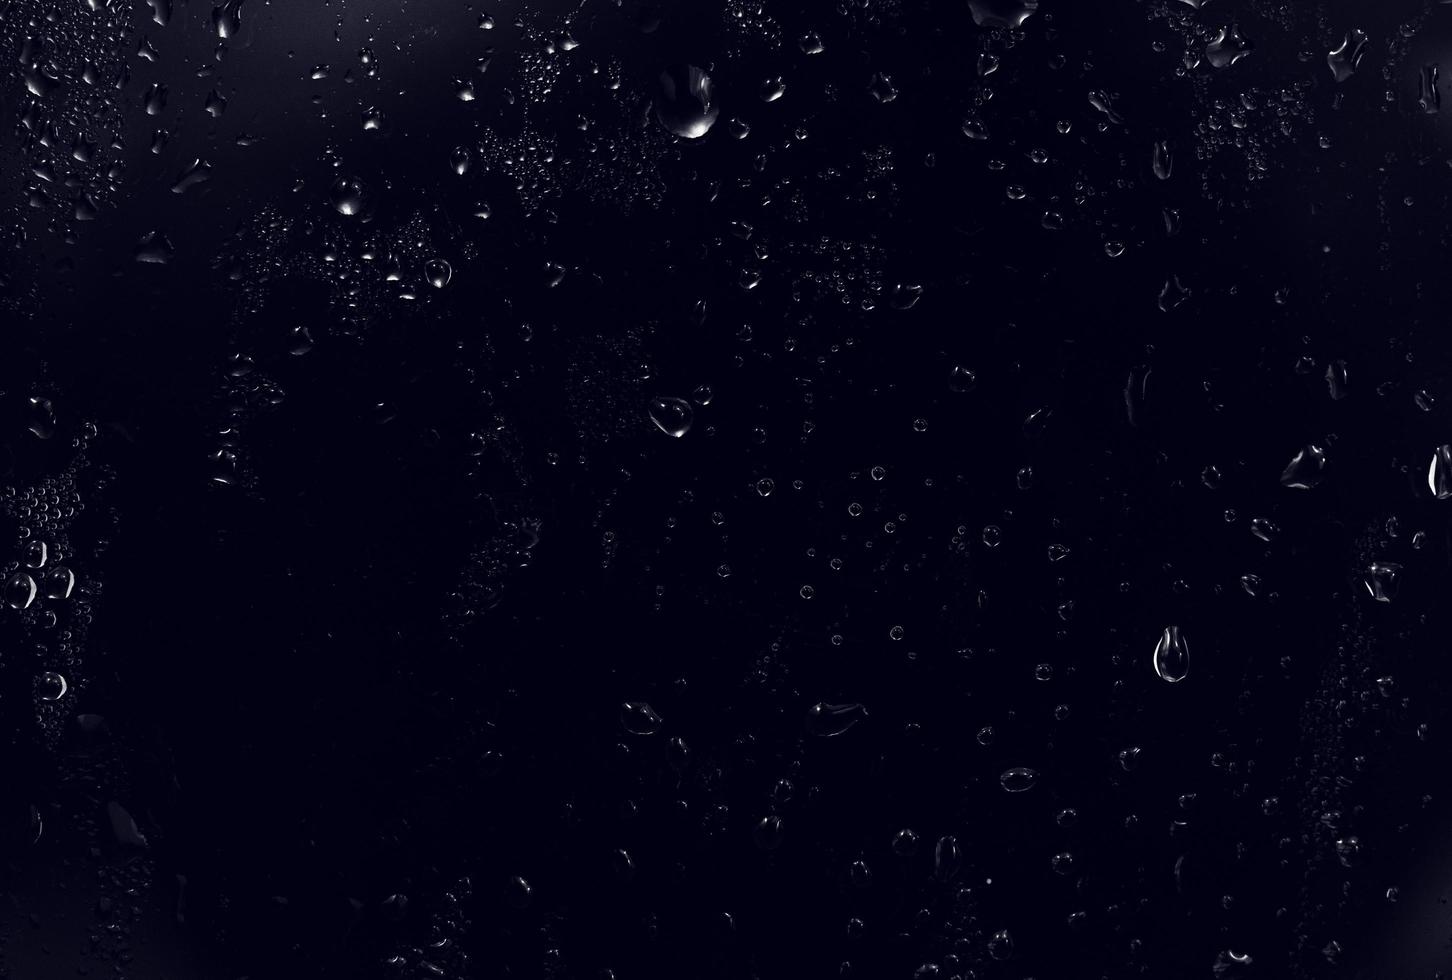 gouttes d'eau sur fond noir. gouttelettes d'eau de rosée abstraites sur une vitre pour un effet de superposition de photos ou pour donner un effet frais sur la maquette de boissons. plan macro sur la goutte de pluie détaillée.